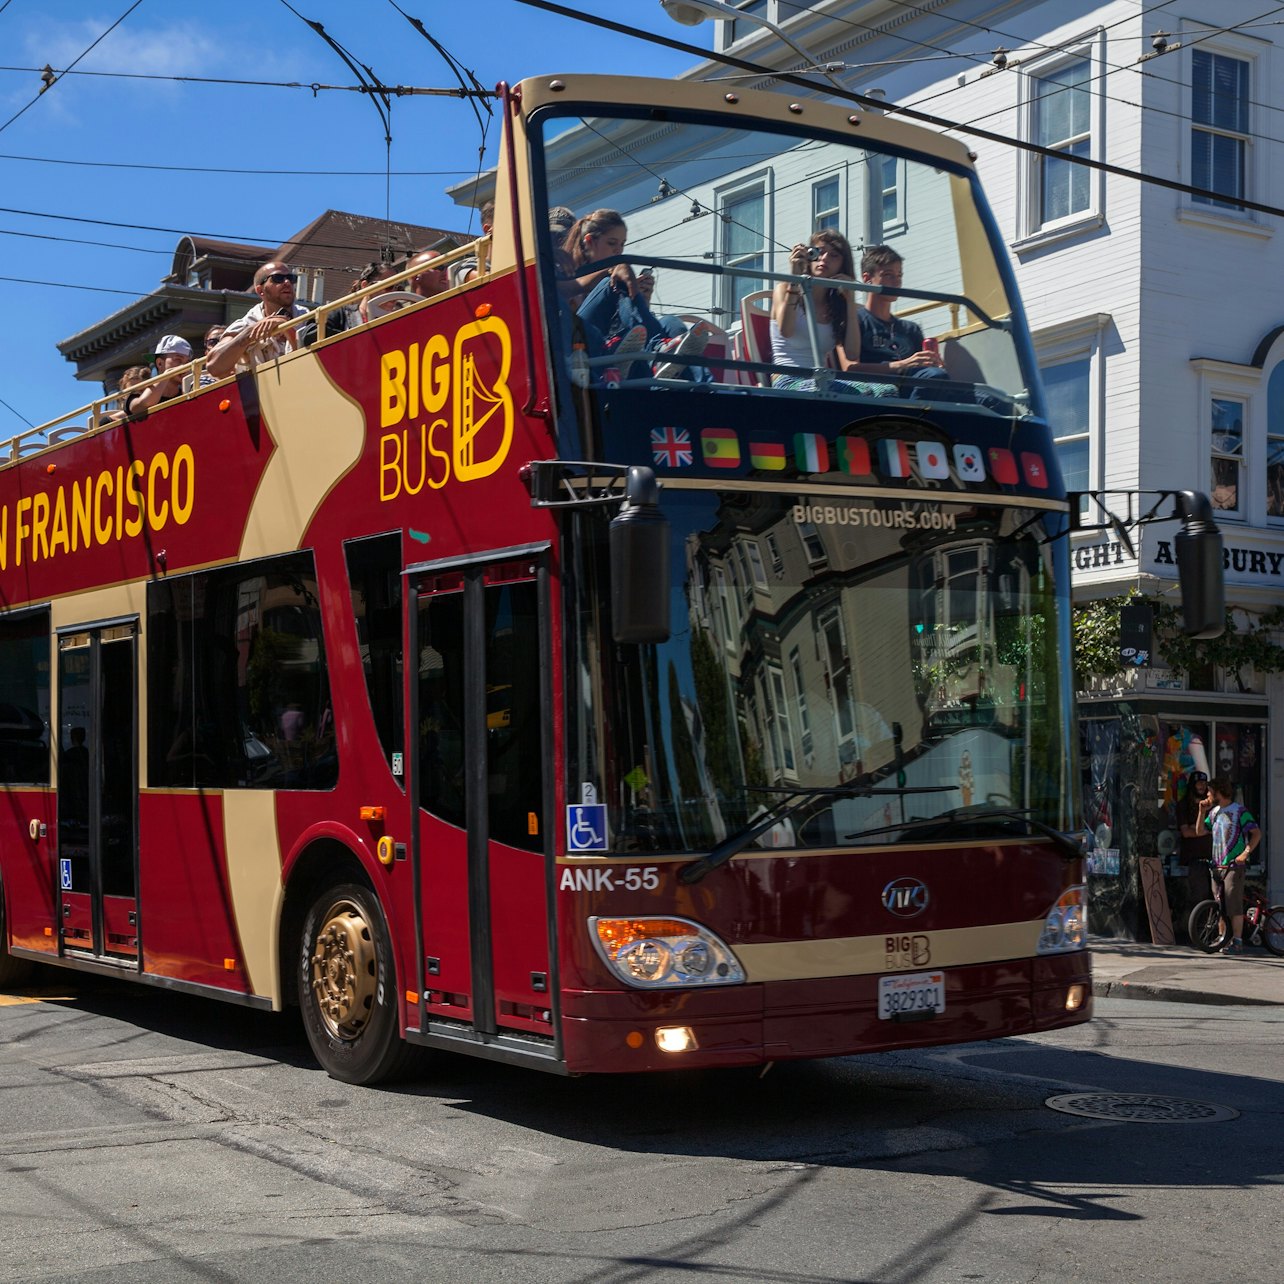 Big Bus San Francisco: Tour en bus turístico - Alojamientos en San Francisco